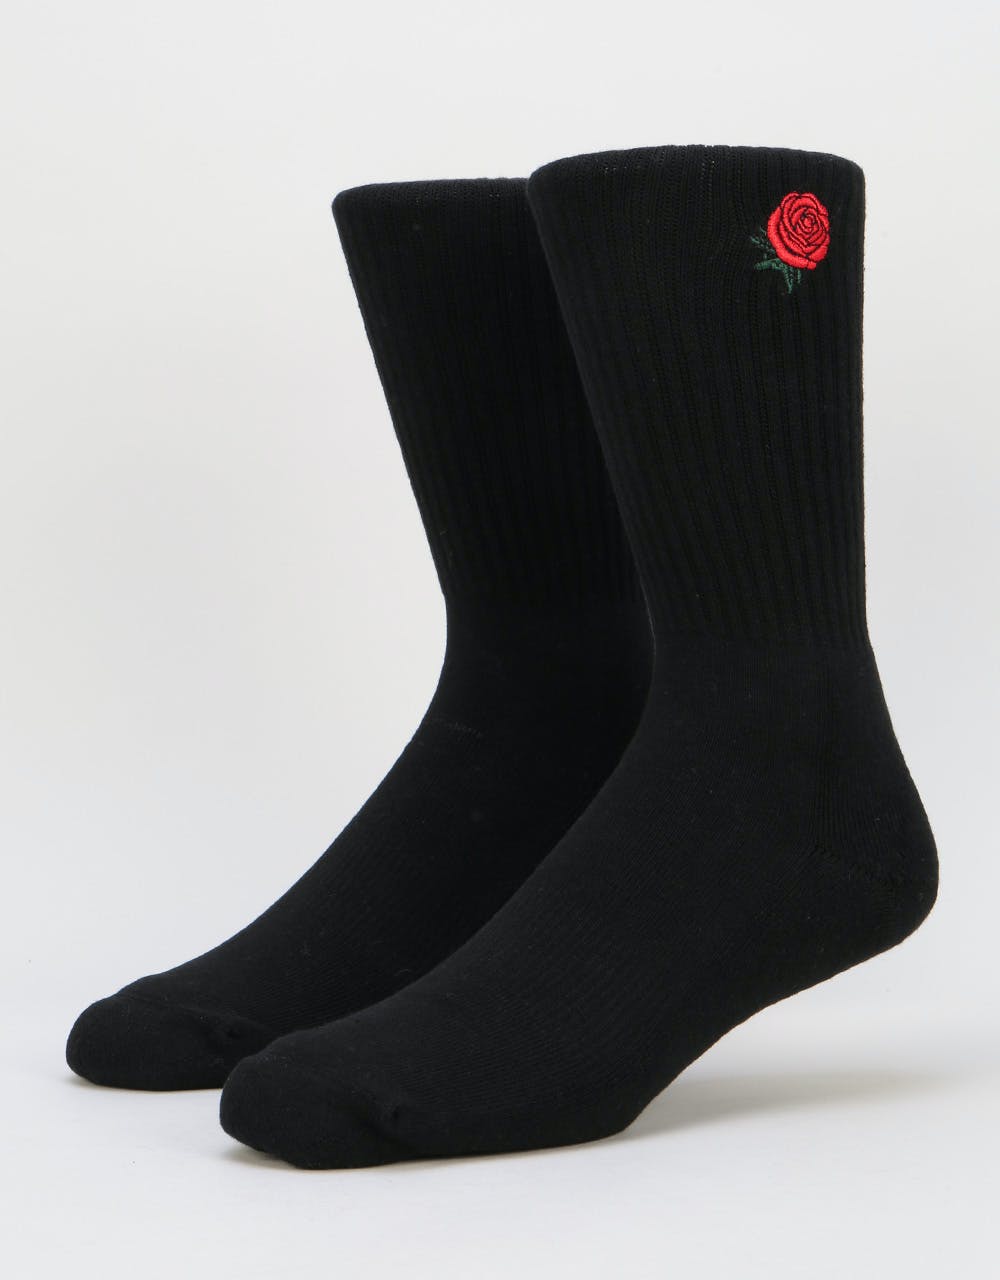 Route One Rose Socks - Black